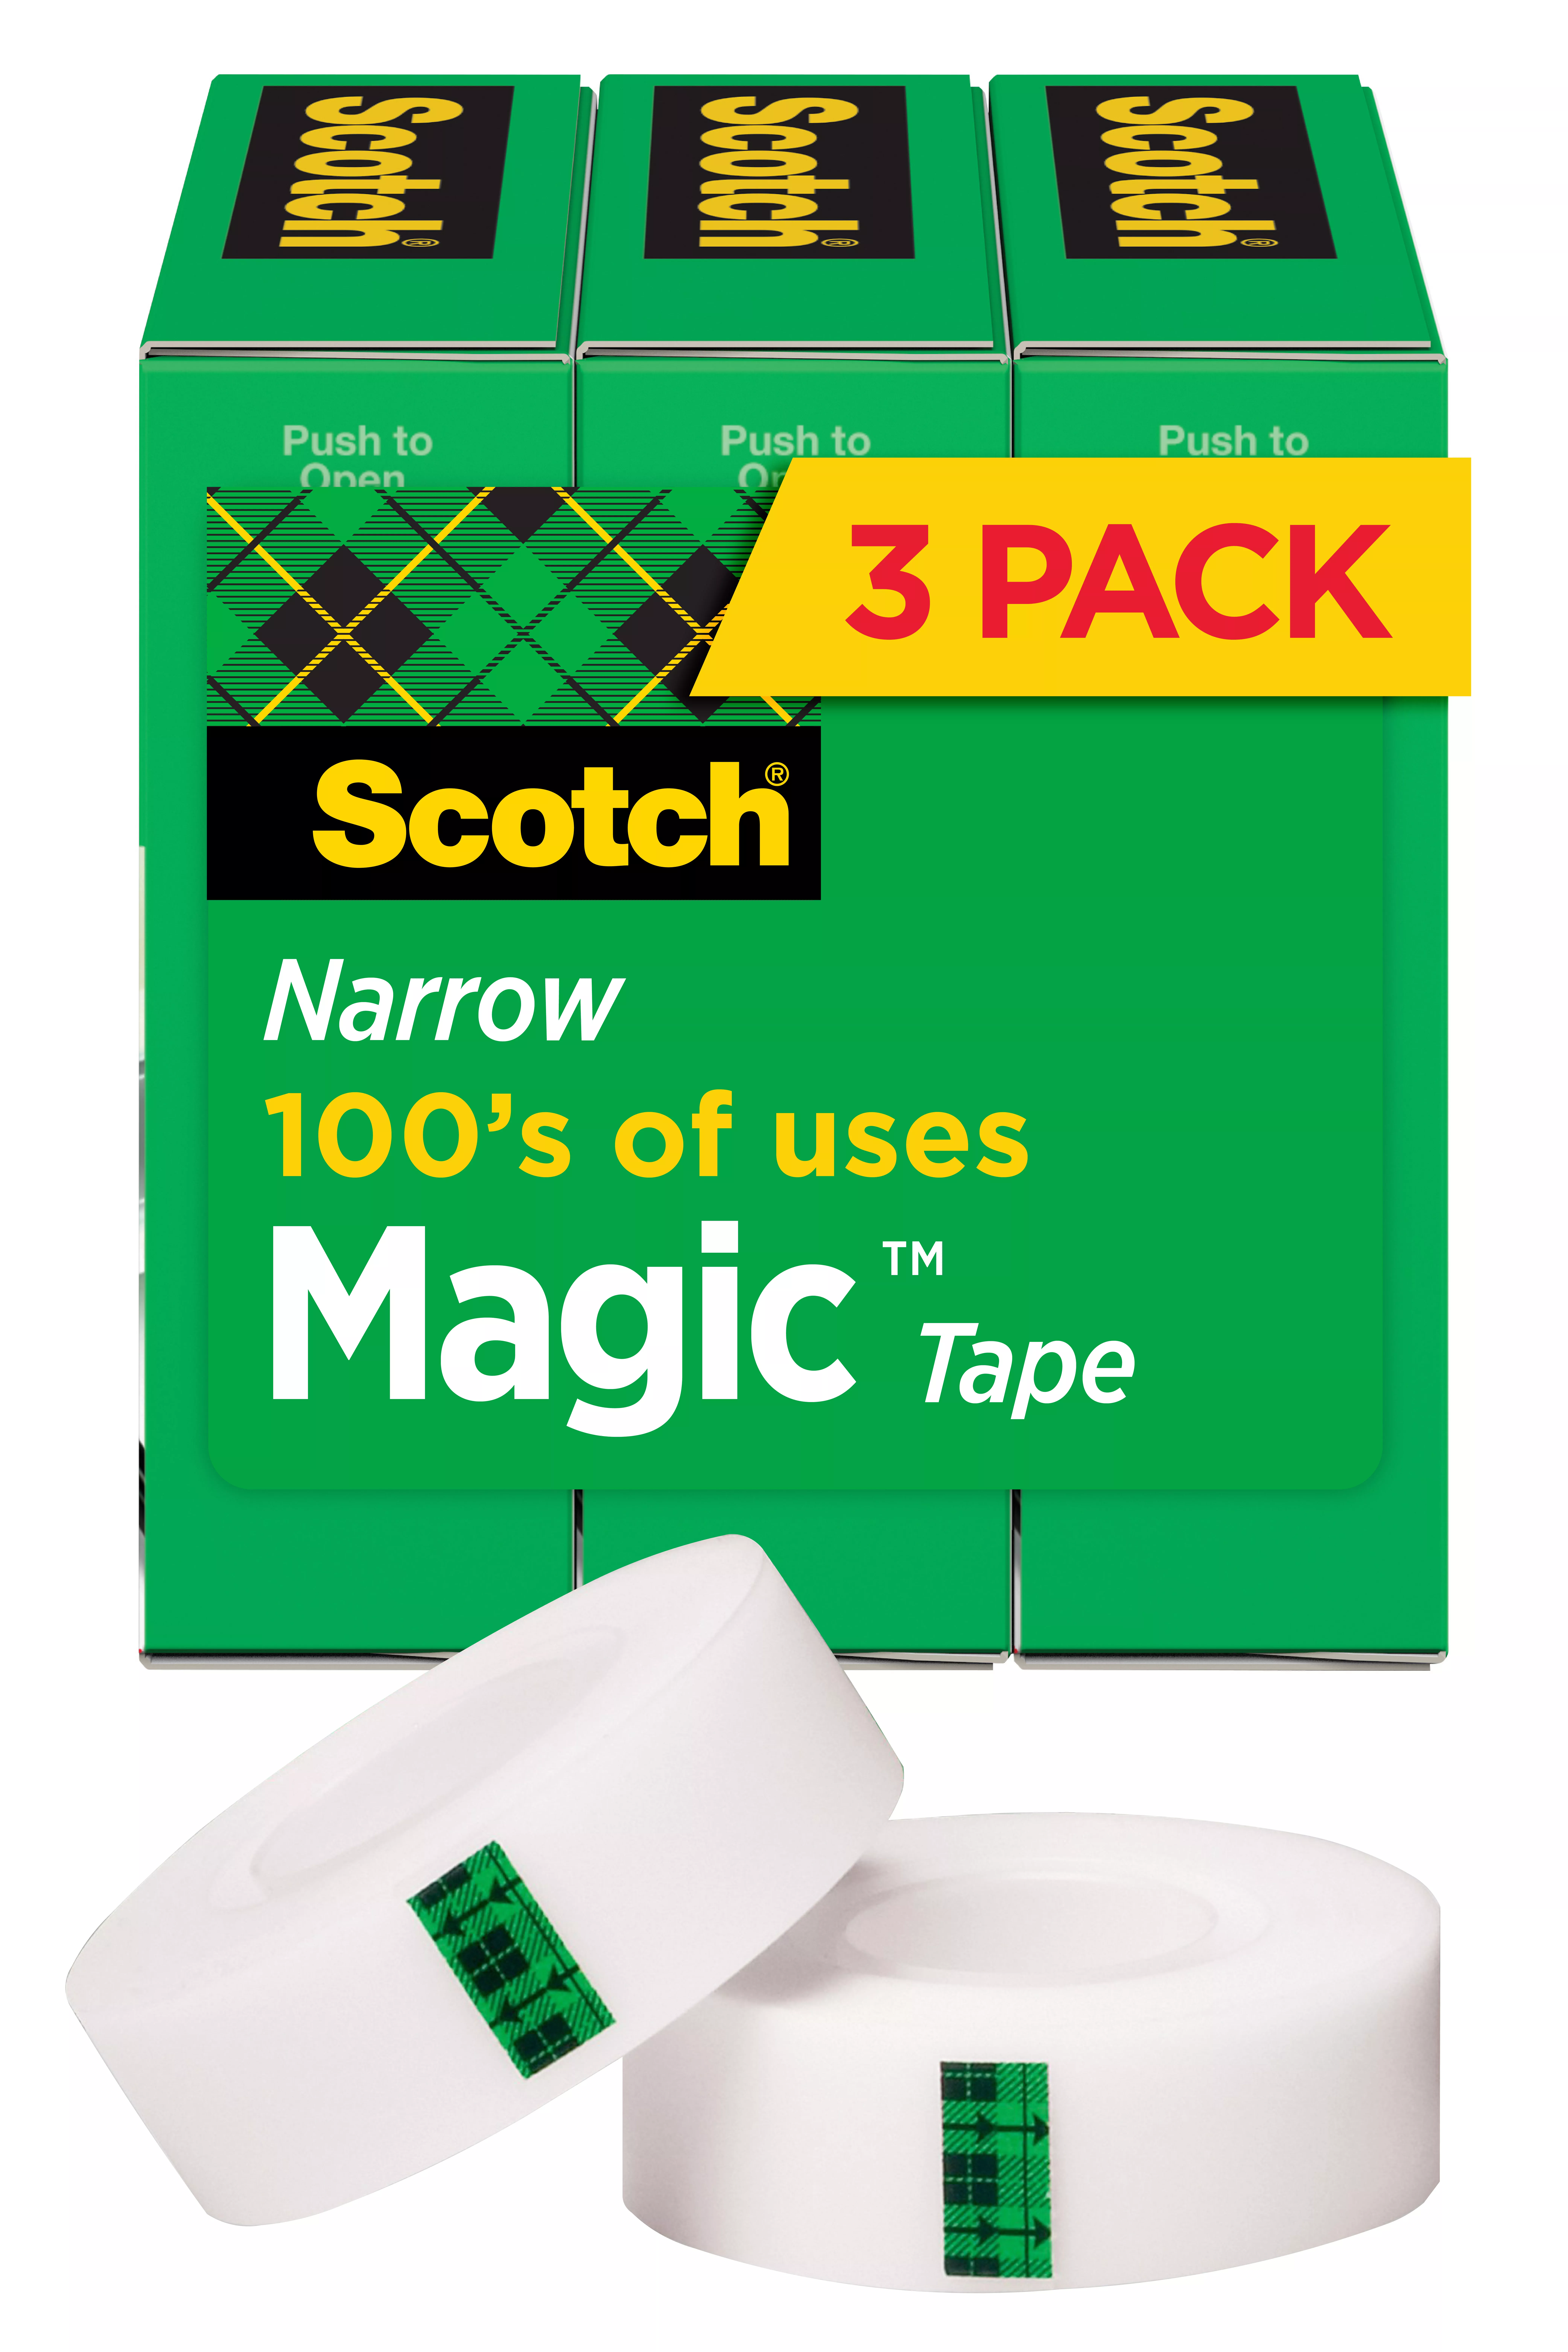 Scotch® Magic™ Tape 810H3 1/2 in x 1296 in